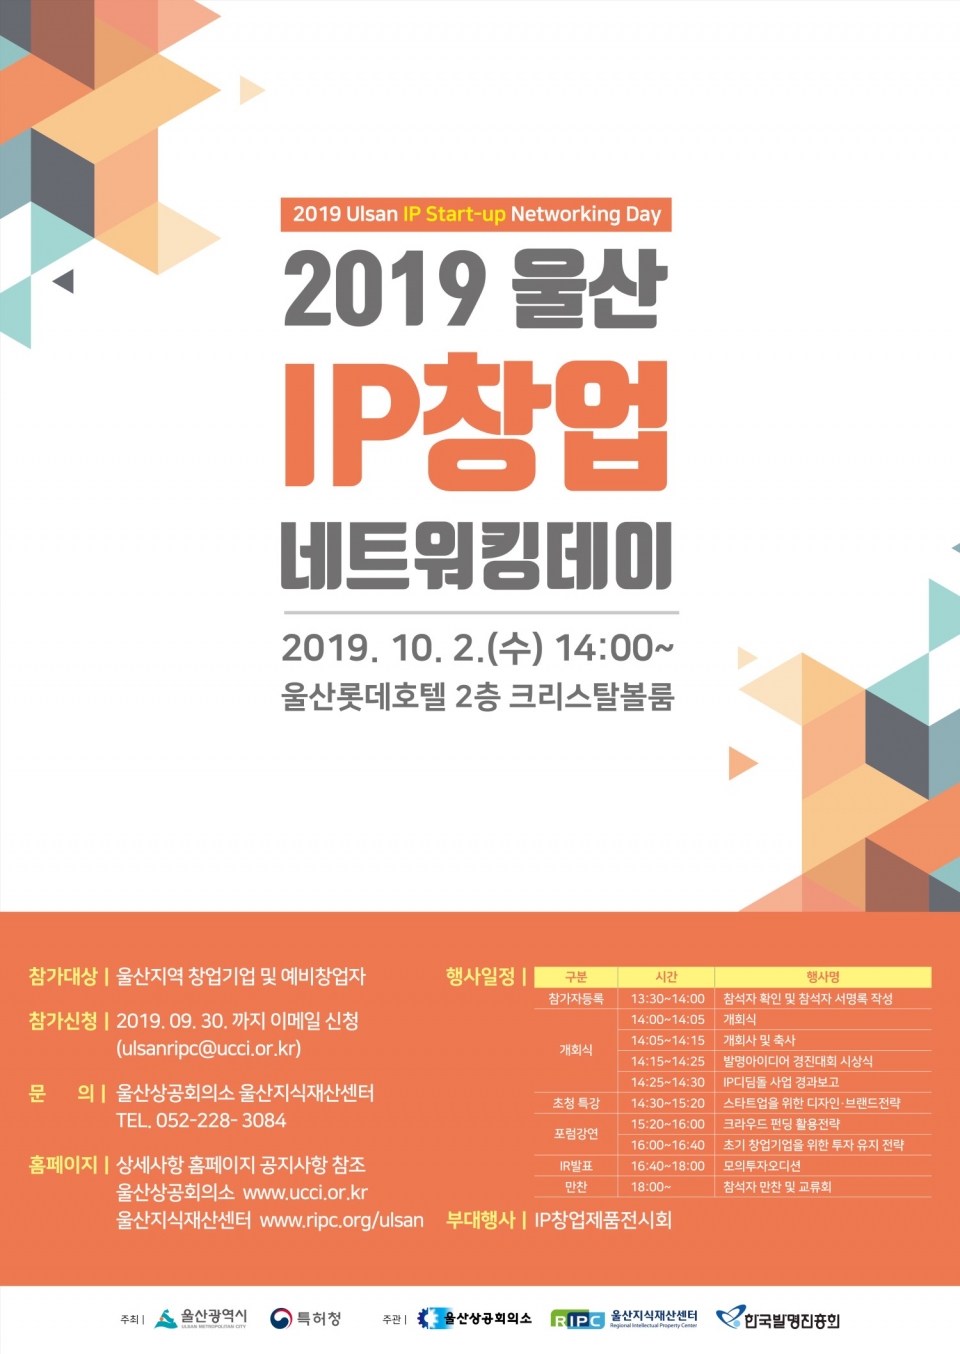 ‘2019 울산 IP창업네트워킹데이’ 포스터. (출처: 울산상공회의소)